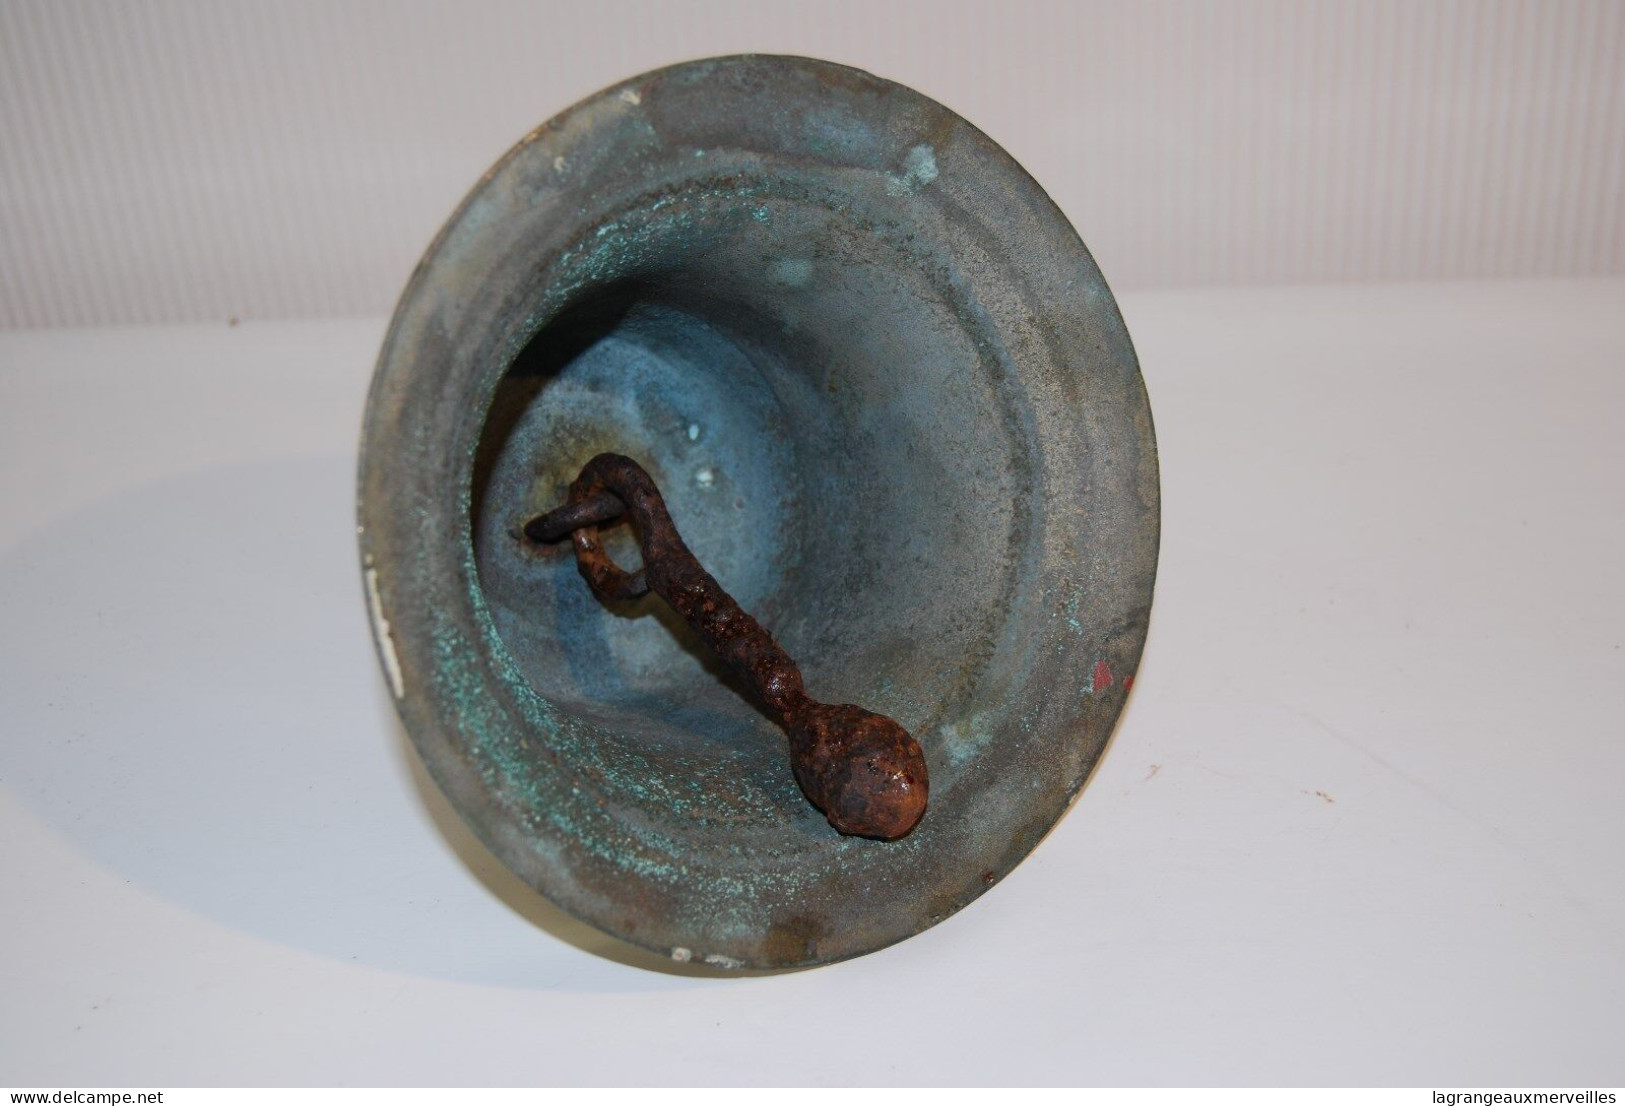 C134 Authentique cloche - bronze - cérémonie - H 14 cm - old bronze bell - très lourde